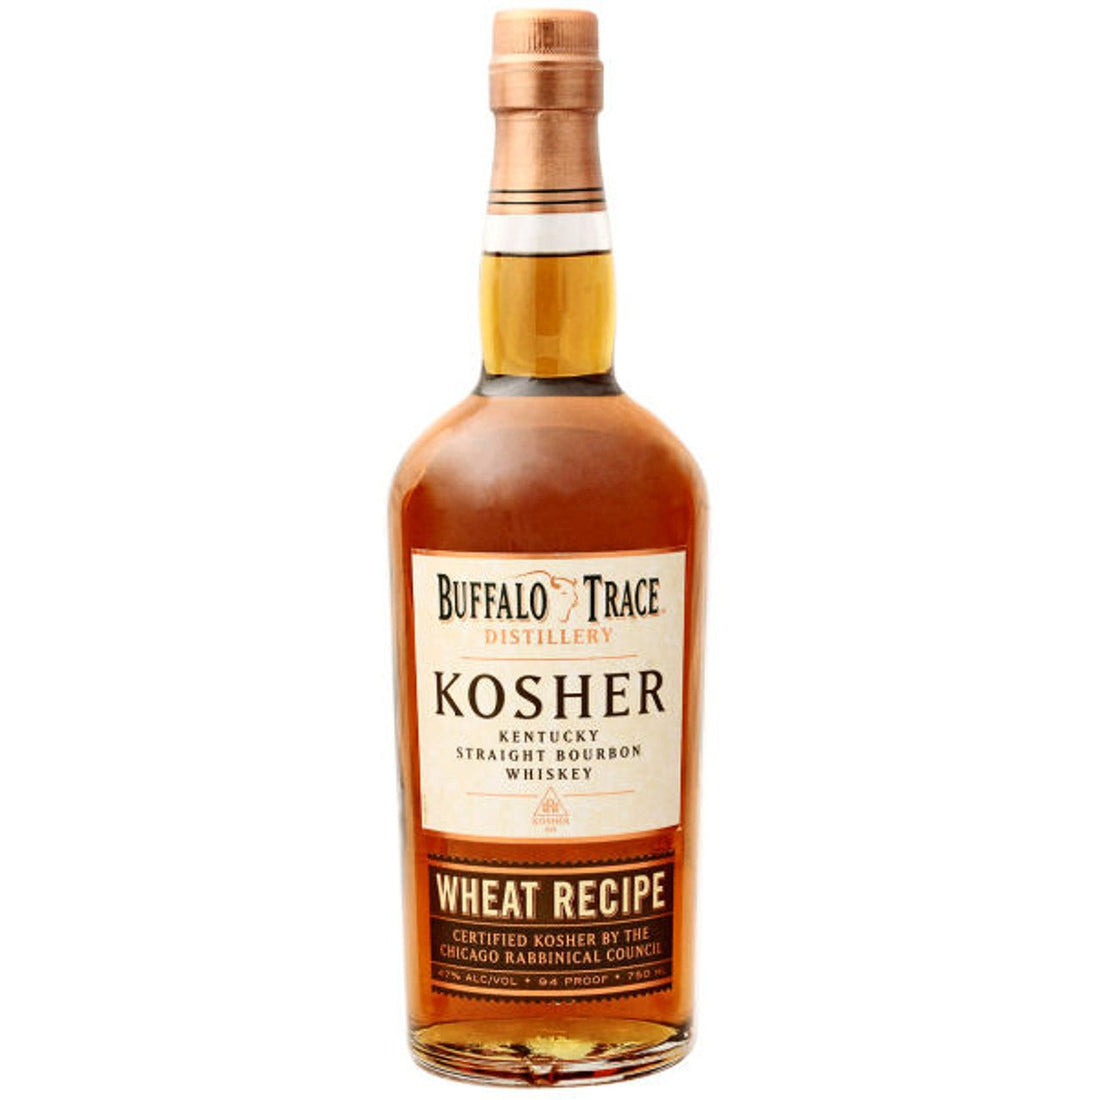 Buffalo Trace Kosher Wheat Recipe Kentucky Straight Bourbon Whiskey - LoveScotch.com 